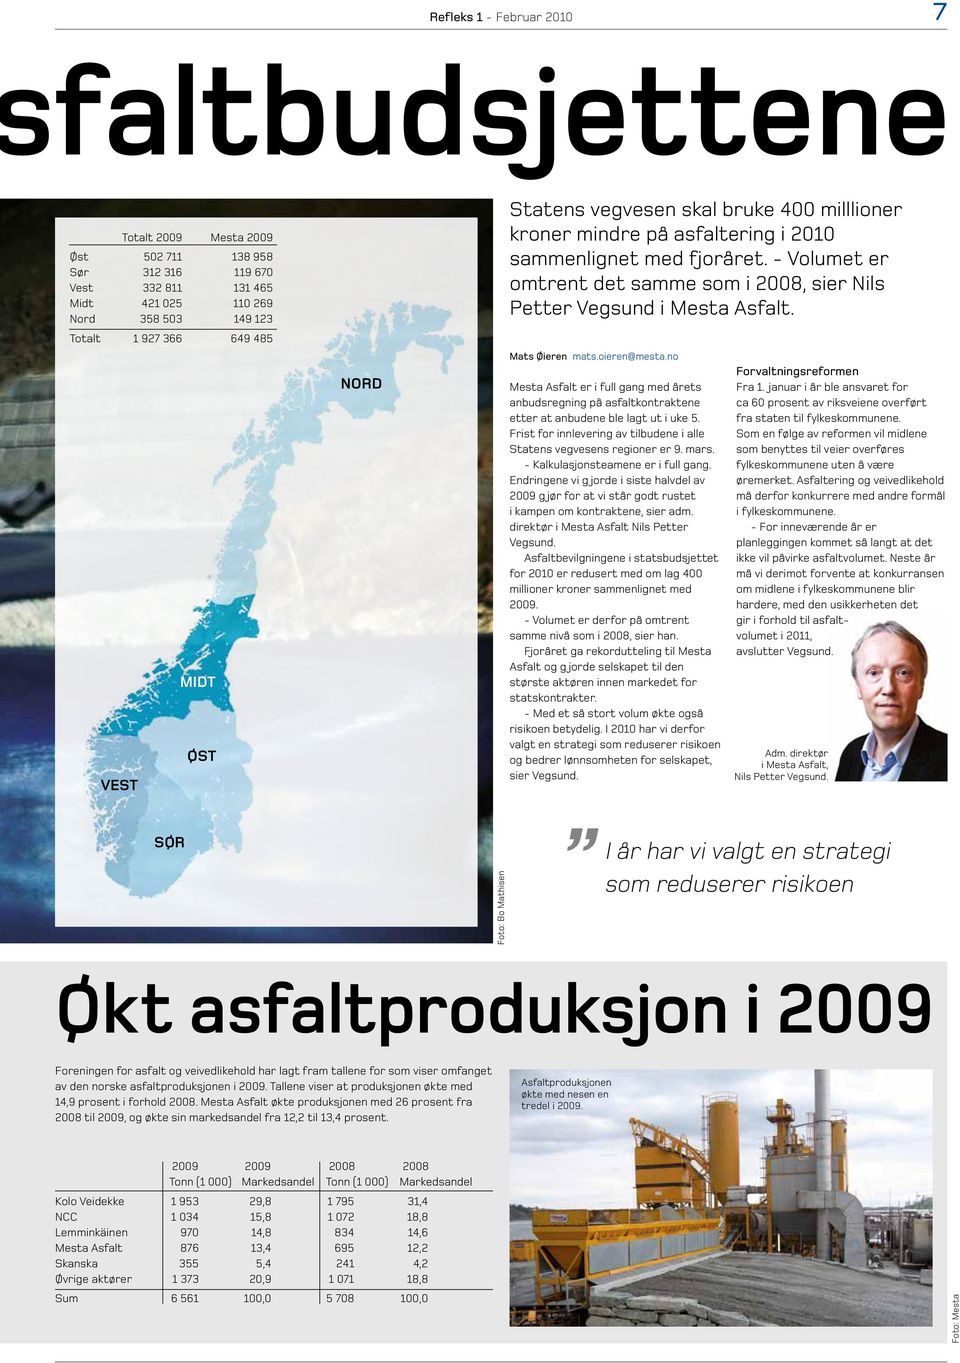 - Volumet er omtrent det samme som i 2008, sier Nils Petter Vegsund i Mesta Asfalt. Mats Øieren mats.oieren@mesta.